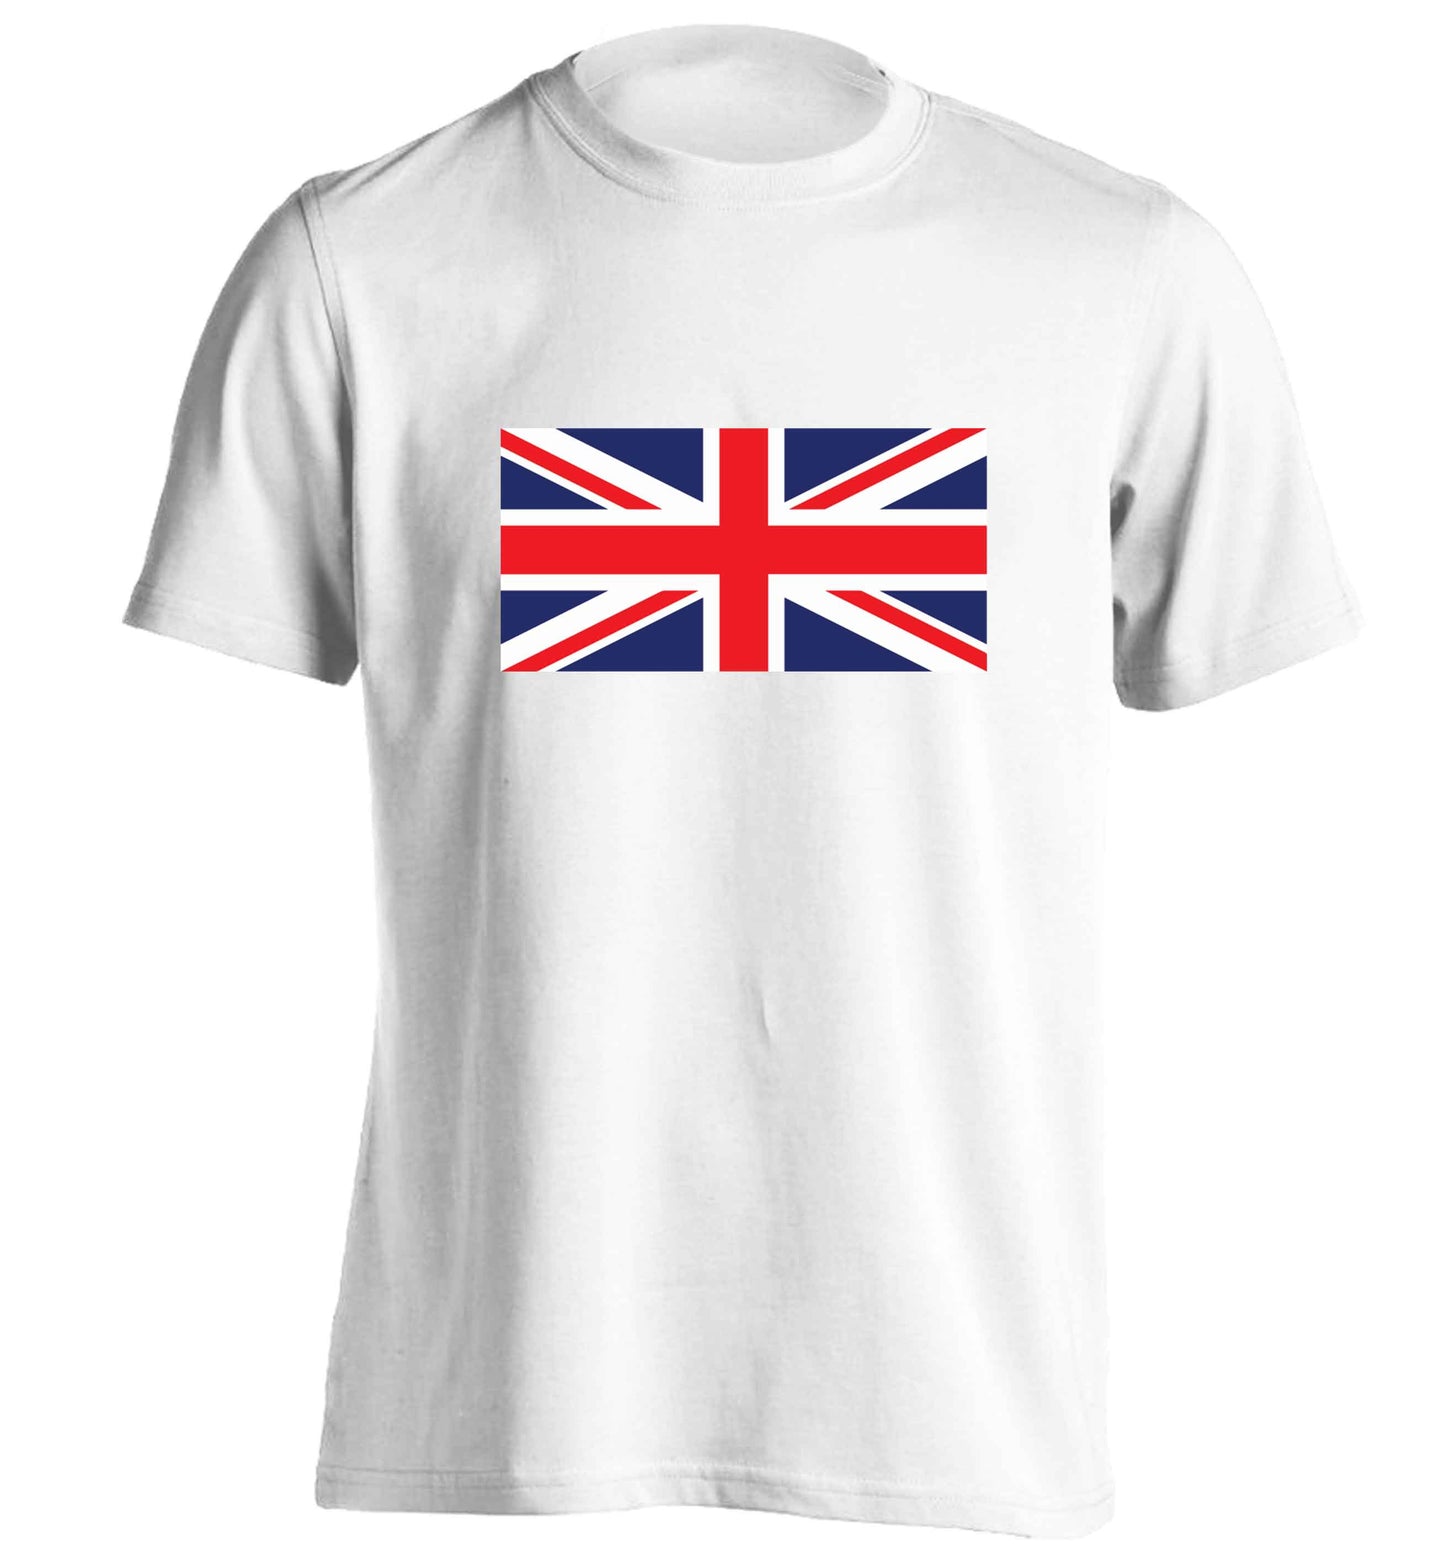 Union Jack adults unisex white Tshirt 2XL